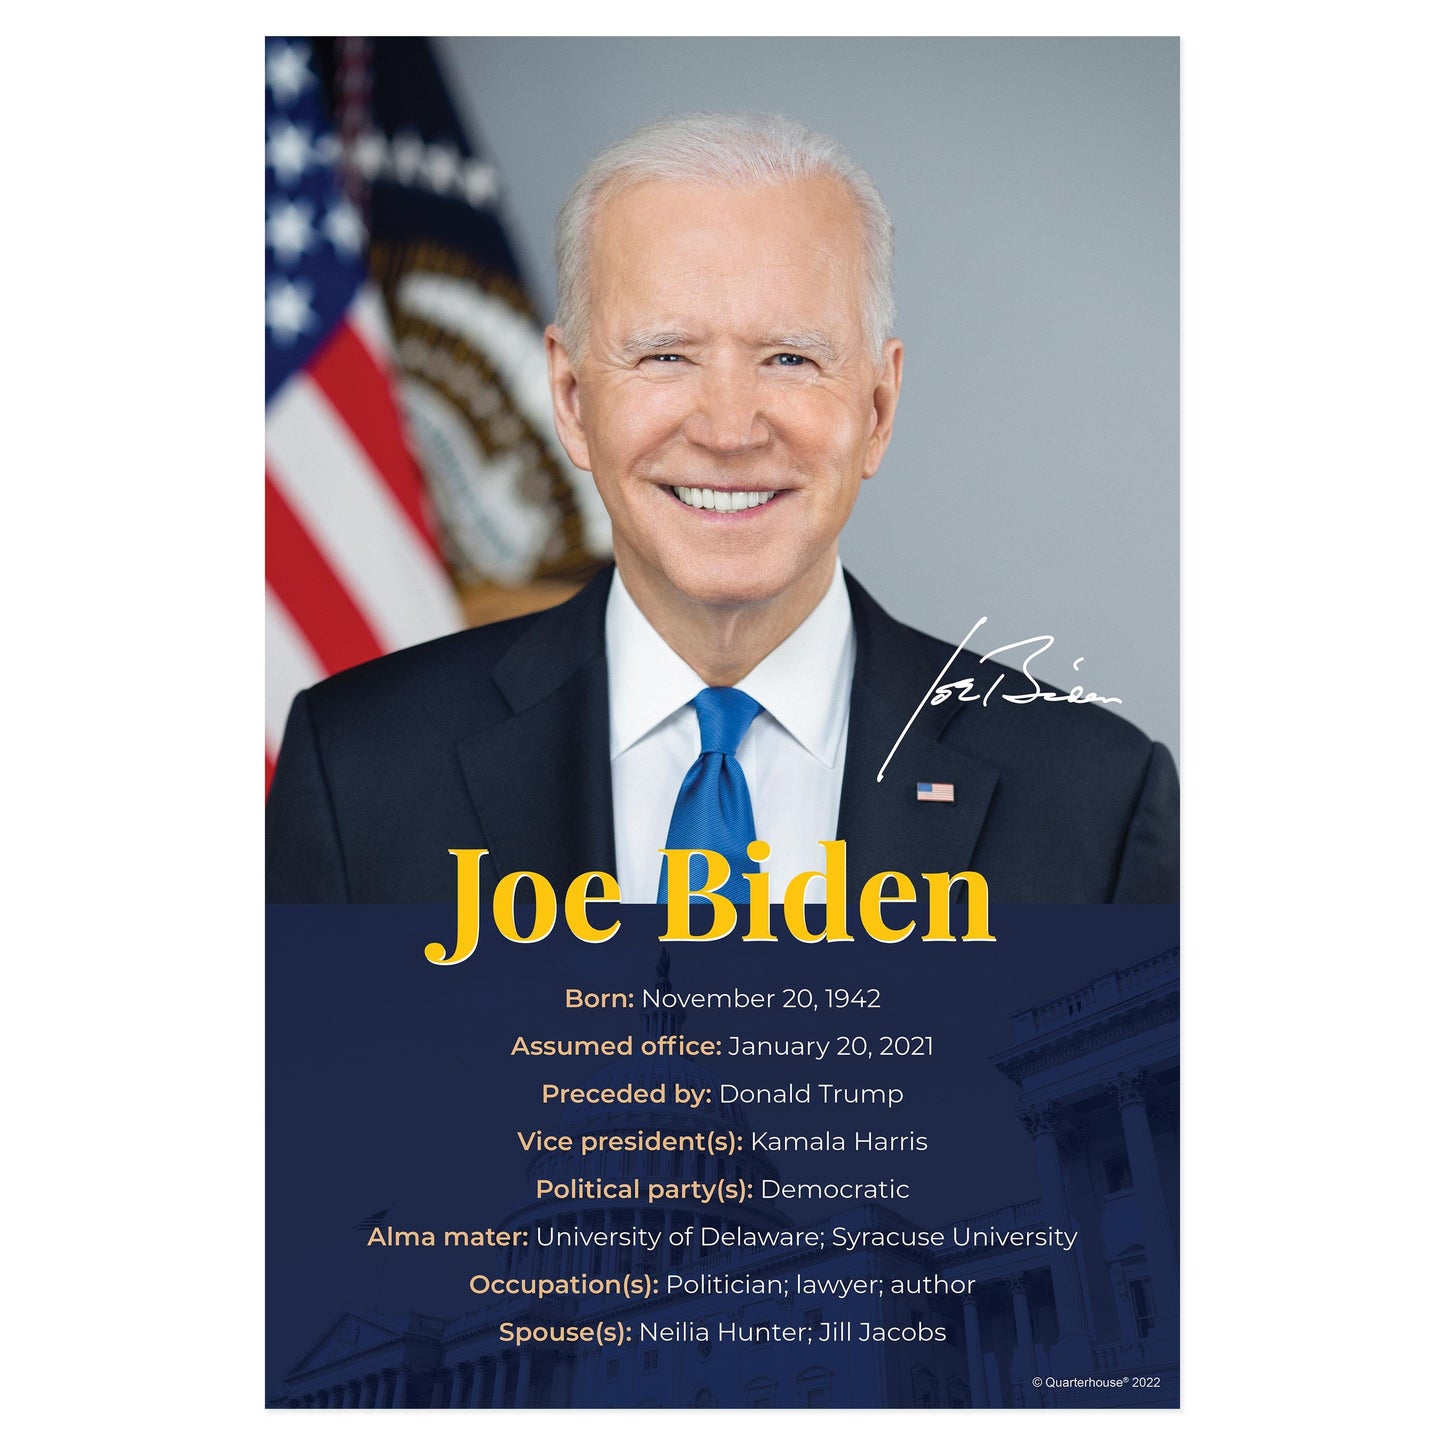 Quarterhouse President Joe Biden Biographical Poster, Social Studies Classroom Materials for Teachers